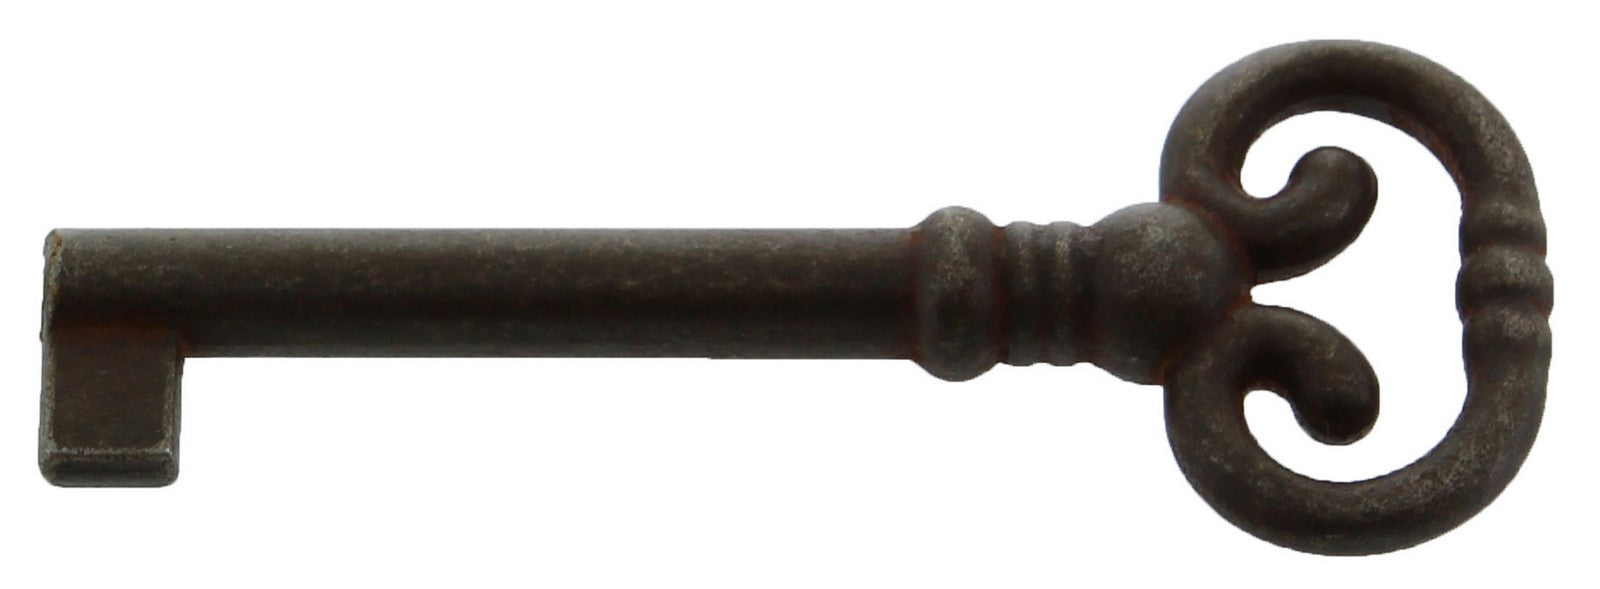 25pz chiave antichizzata art.33007 mm. 29/74 ferro vecchio cod:ferx.10211